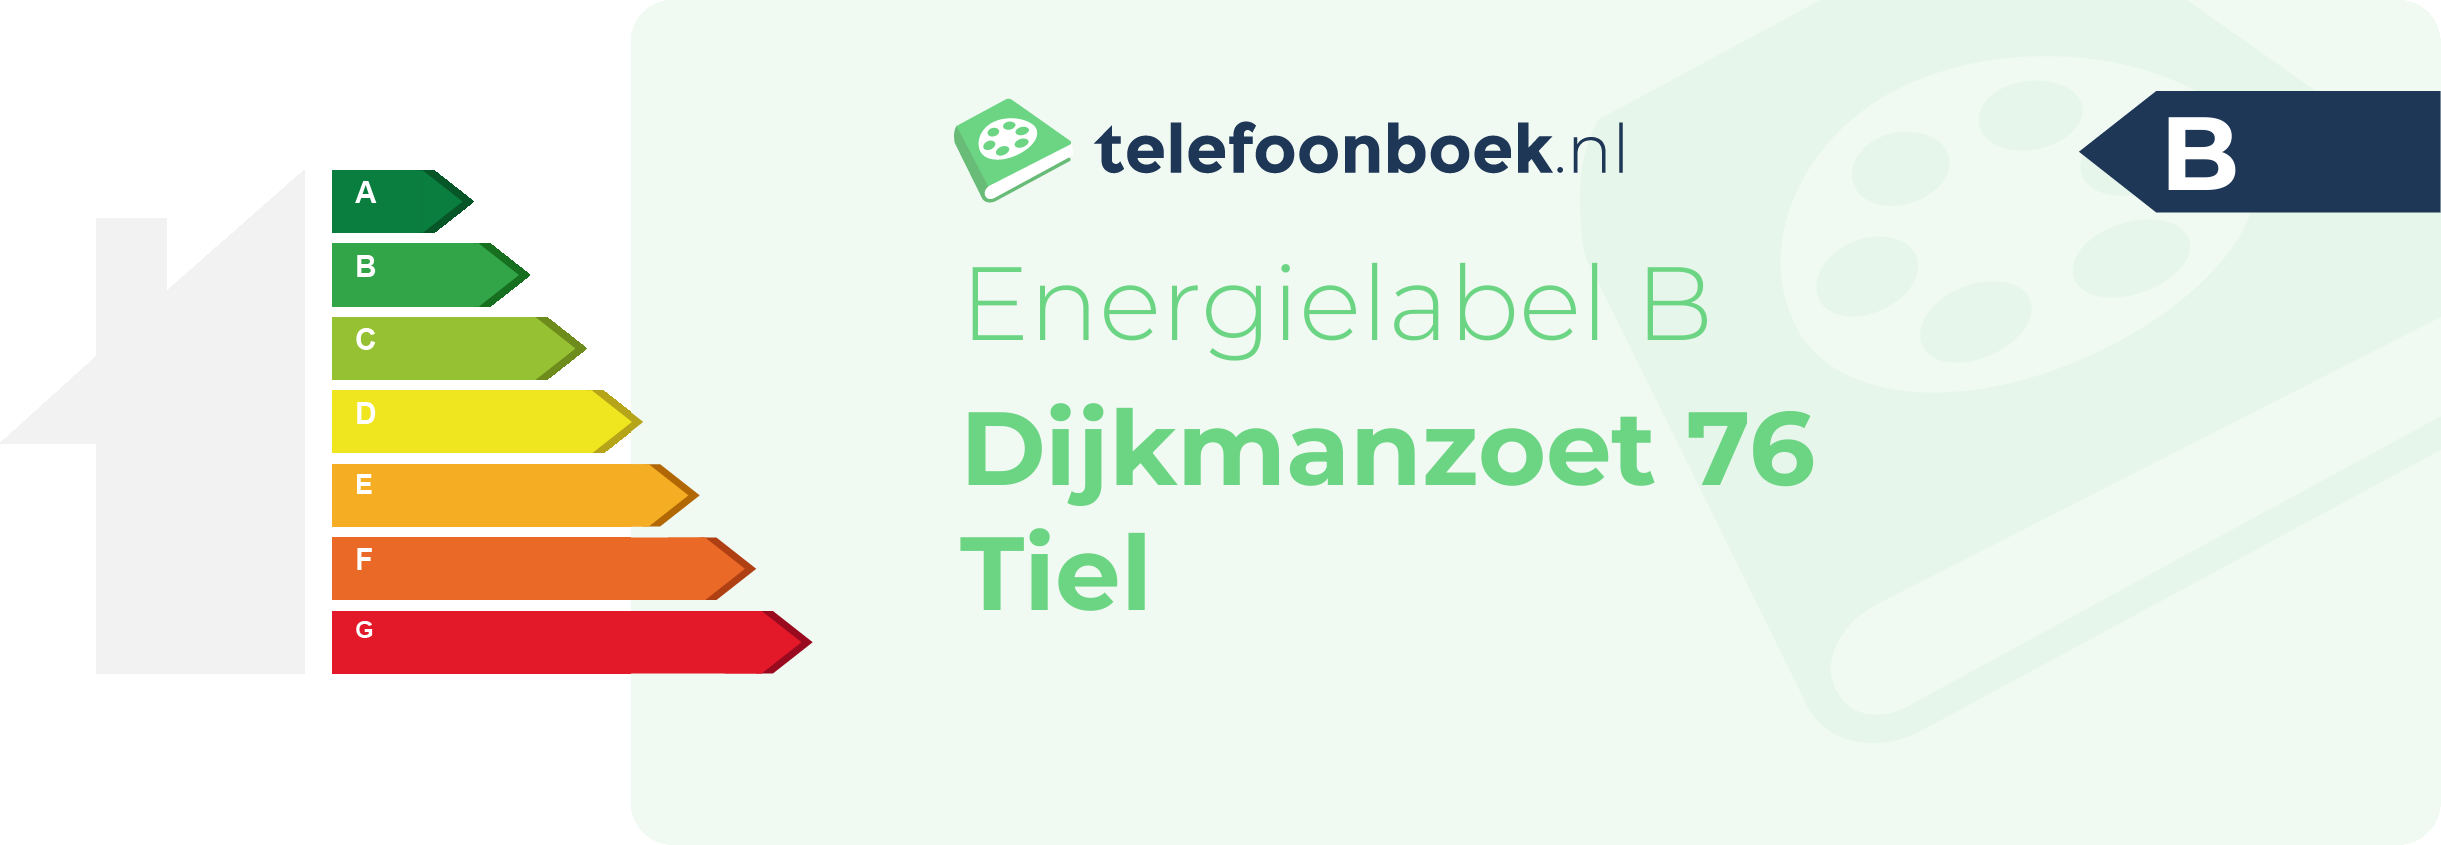 Energielabel Dijkmanzoet 76 Tiel